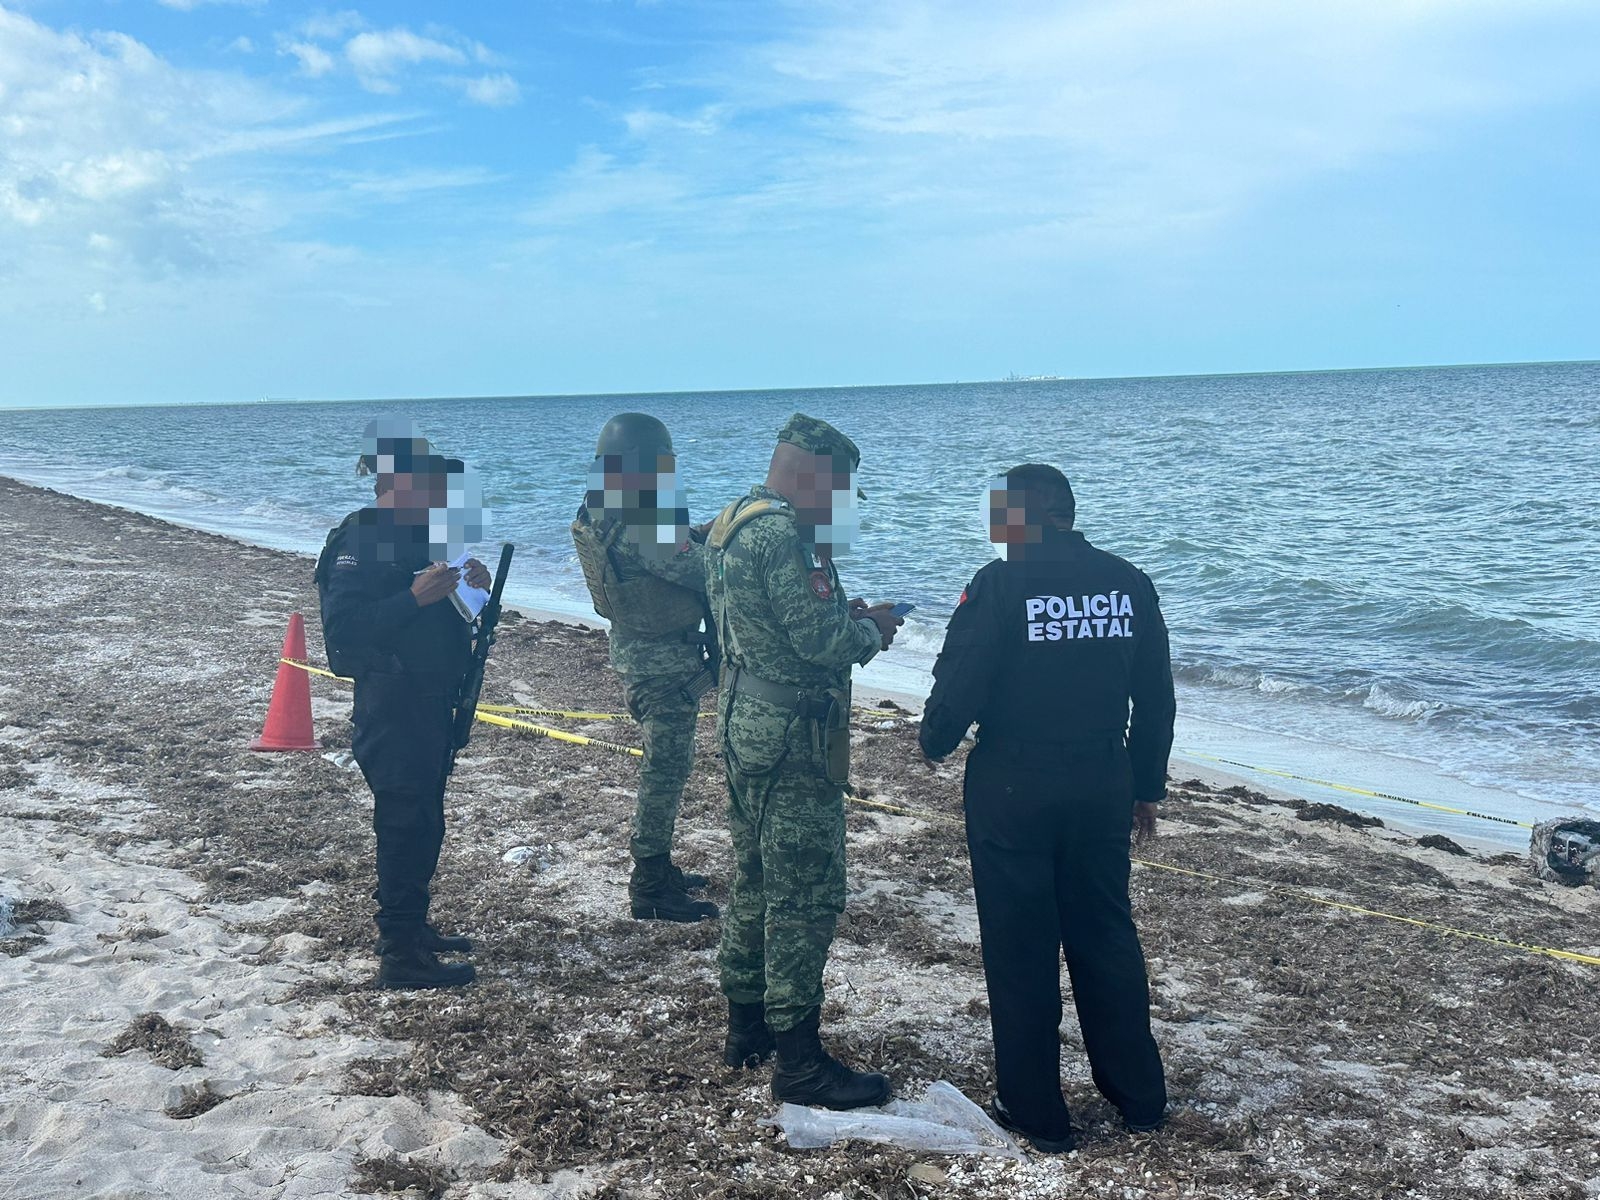 Paquetes de Cocaína son encontrados en las playas de Chicxulub Puerto este sábado